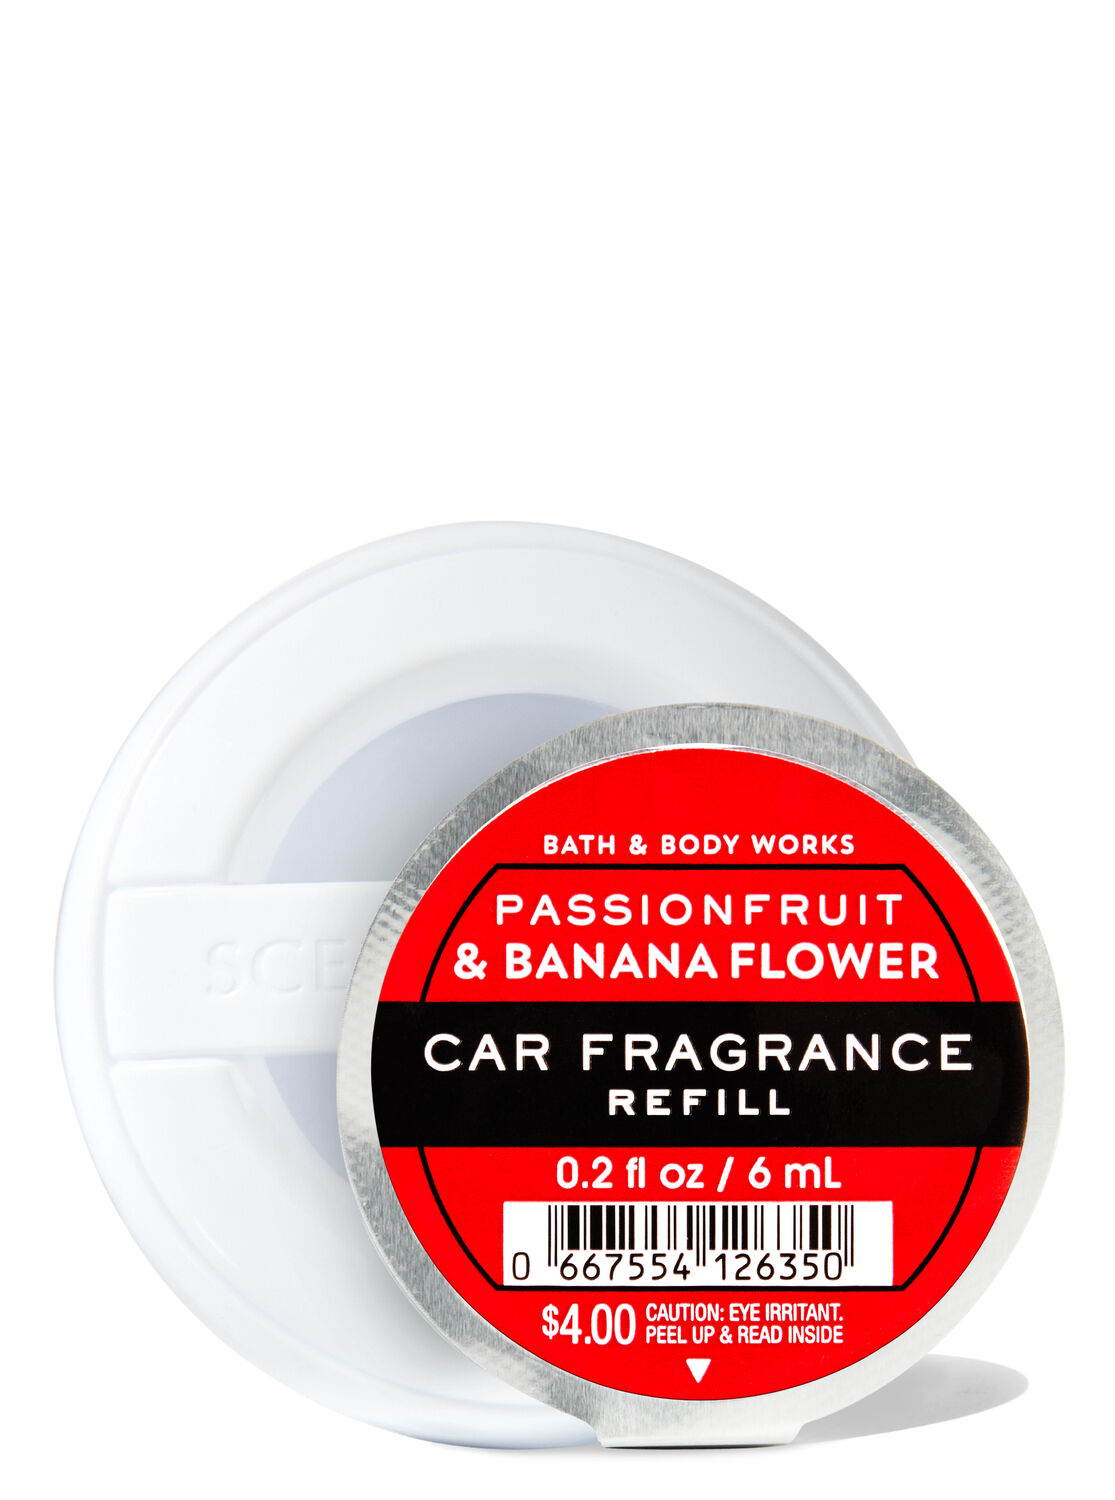 Passionfruit & Banana Flower Car Fragrance Refill